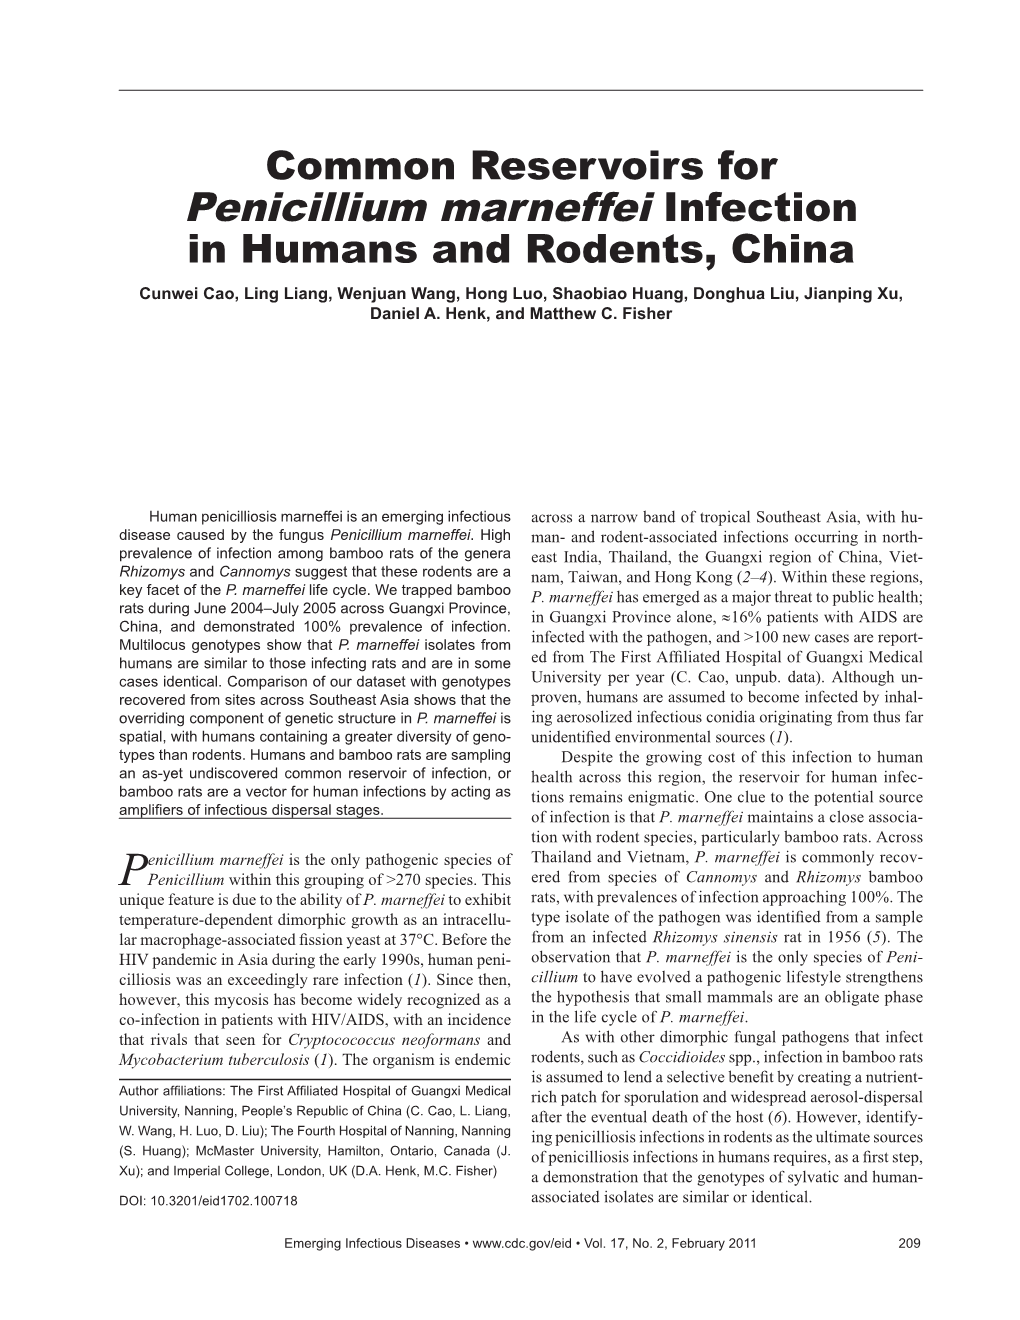 Penicillium Marneffei Infection in Humans and Rodents, China Cunwei Cao, Ling Liang, Wenjuan Wang, Hong Luo, Shaobiao Huang, Donghua Liu, Jianping Xu, Daniel A